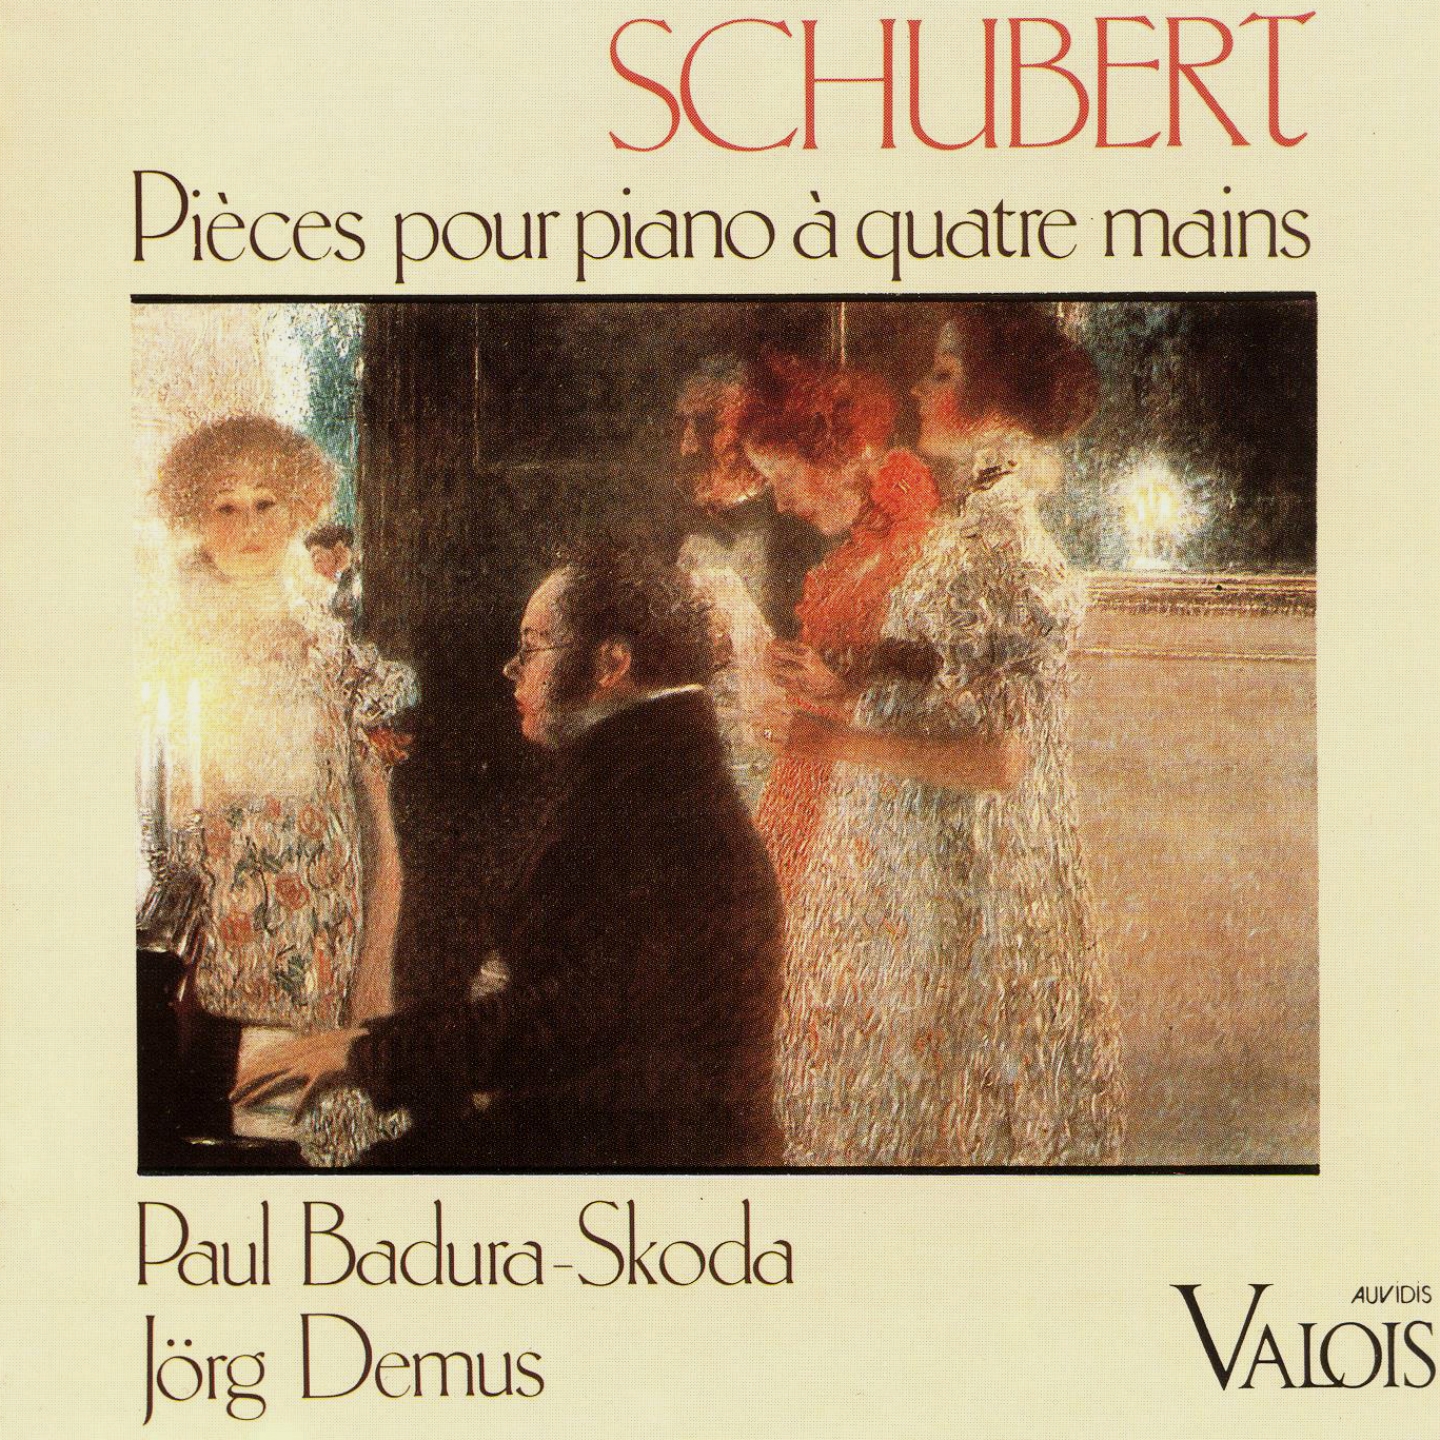 Schubert: Pie ces pour piano a quatre mains